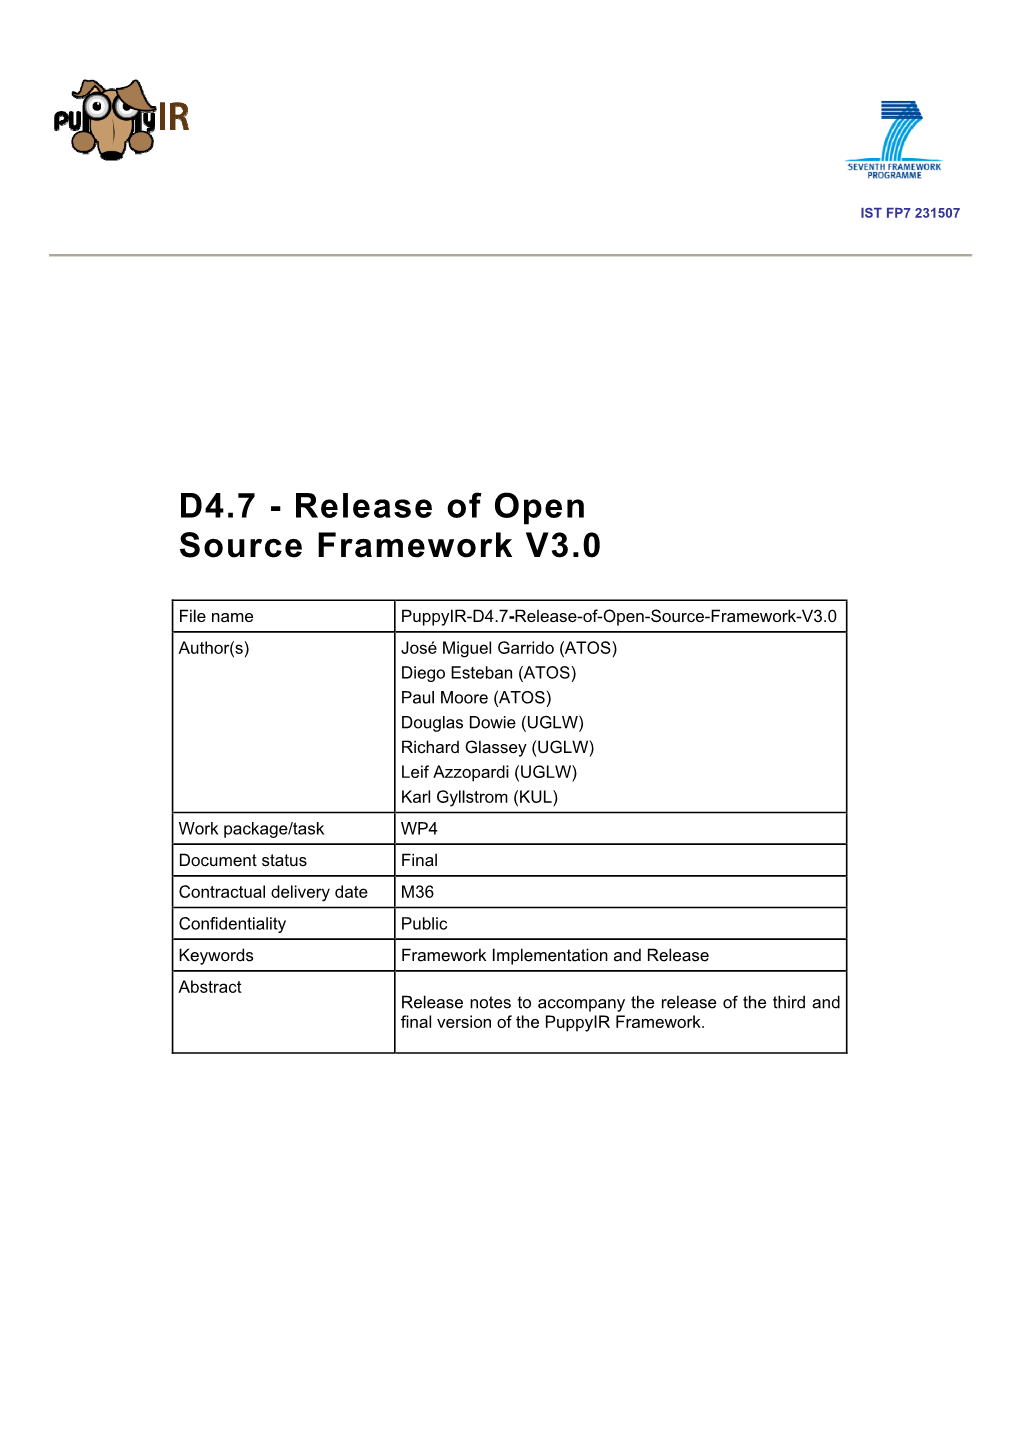 Release of Open Source Framework V3.0